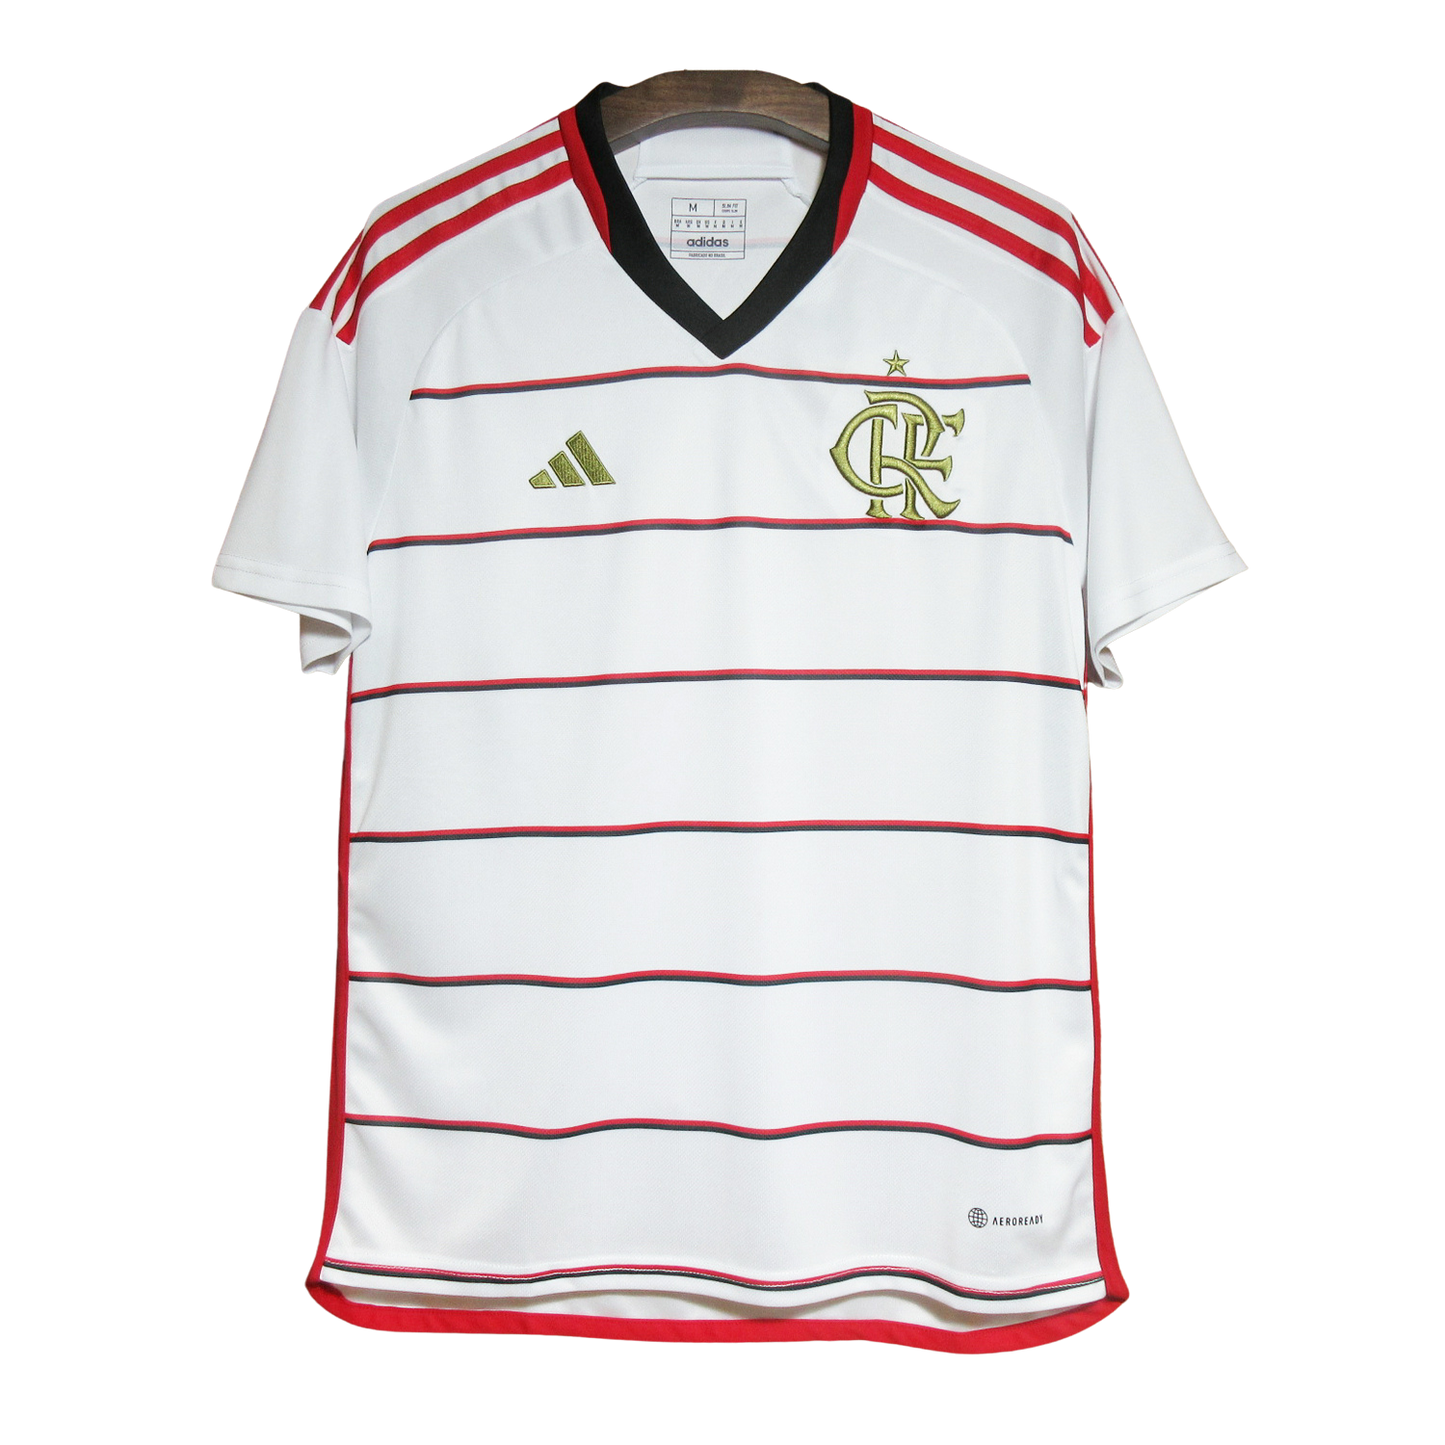 23/24 Flamengo Away kit - Fan version